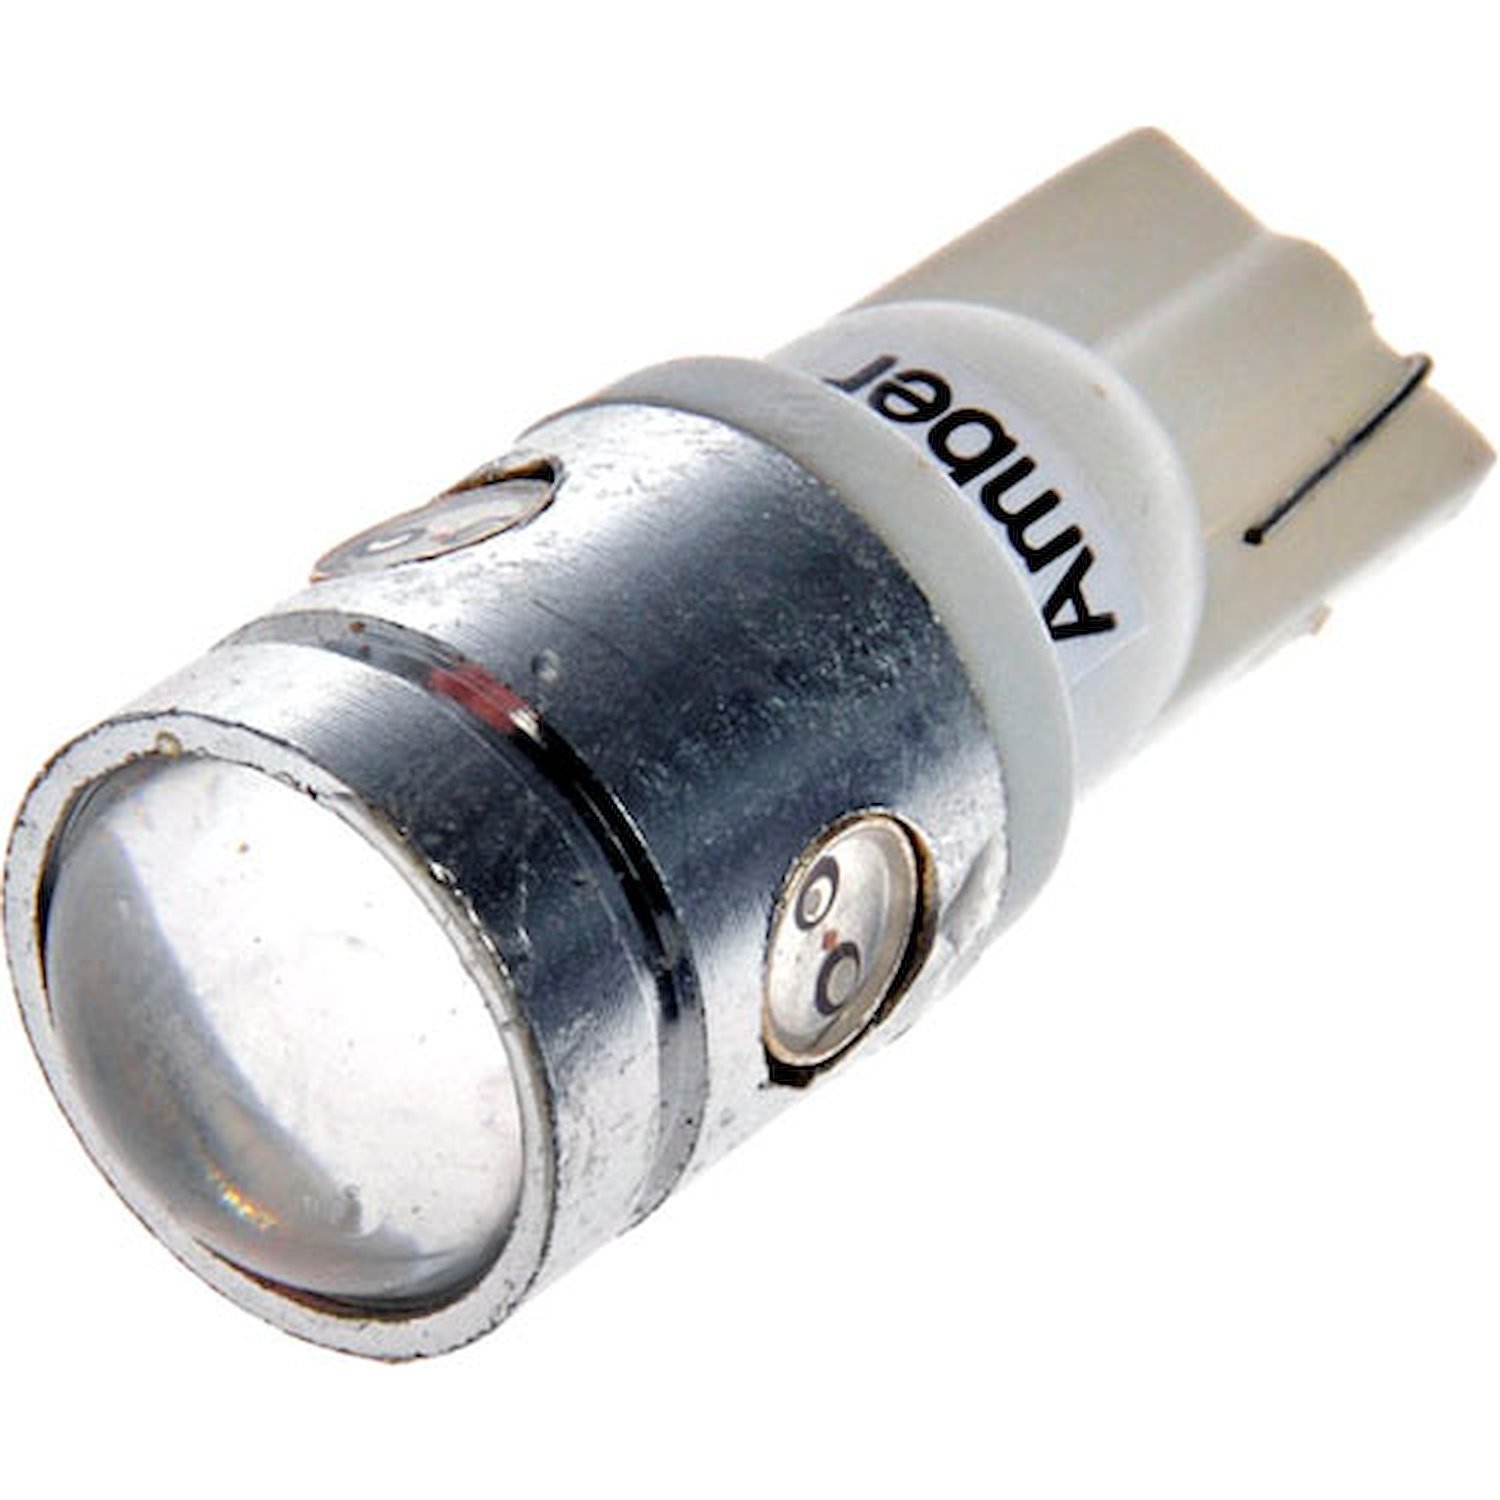 194A-HP Side Marker LED Light Bulb for Multiple Applications [Amber]